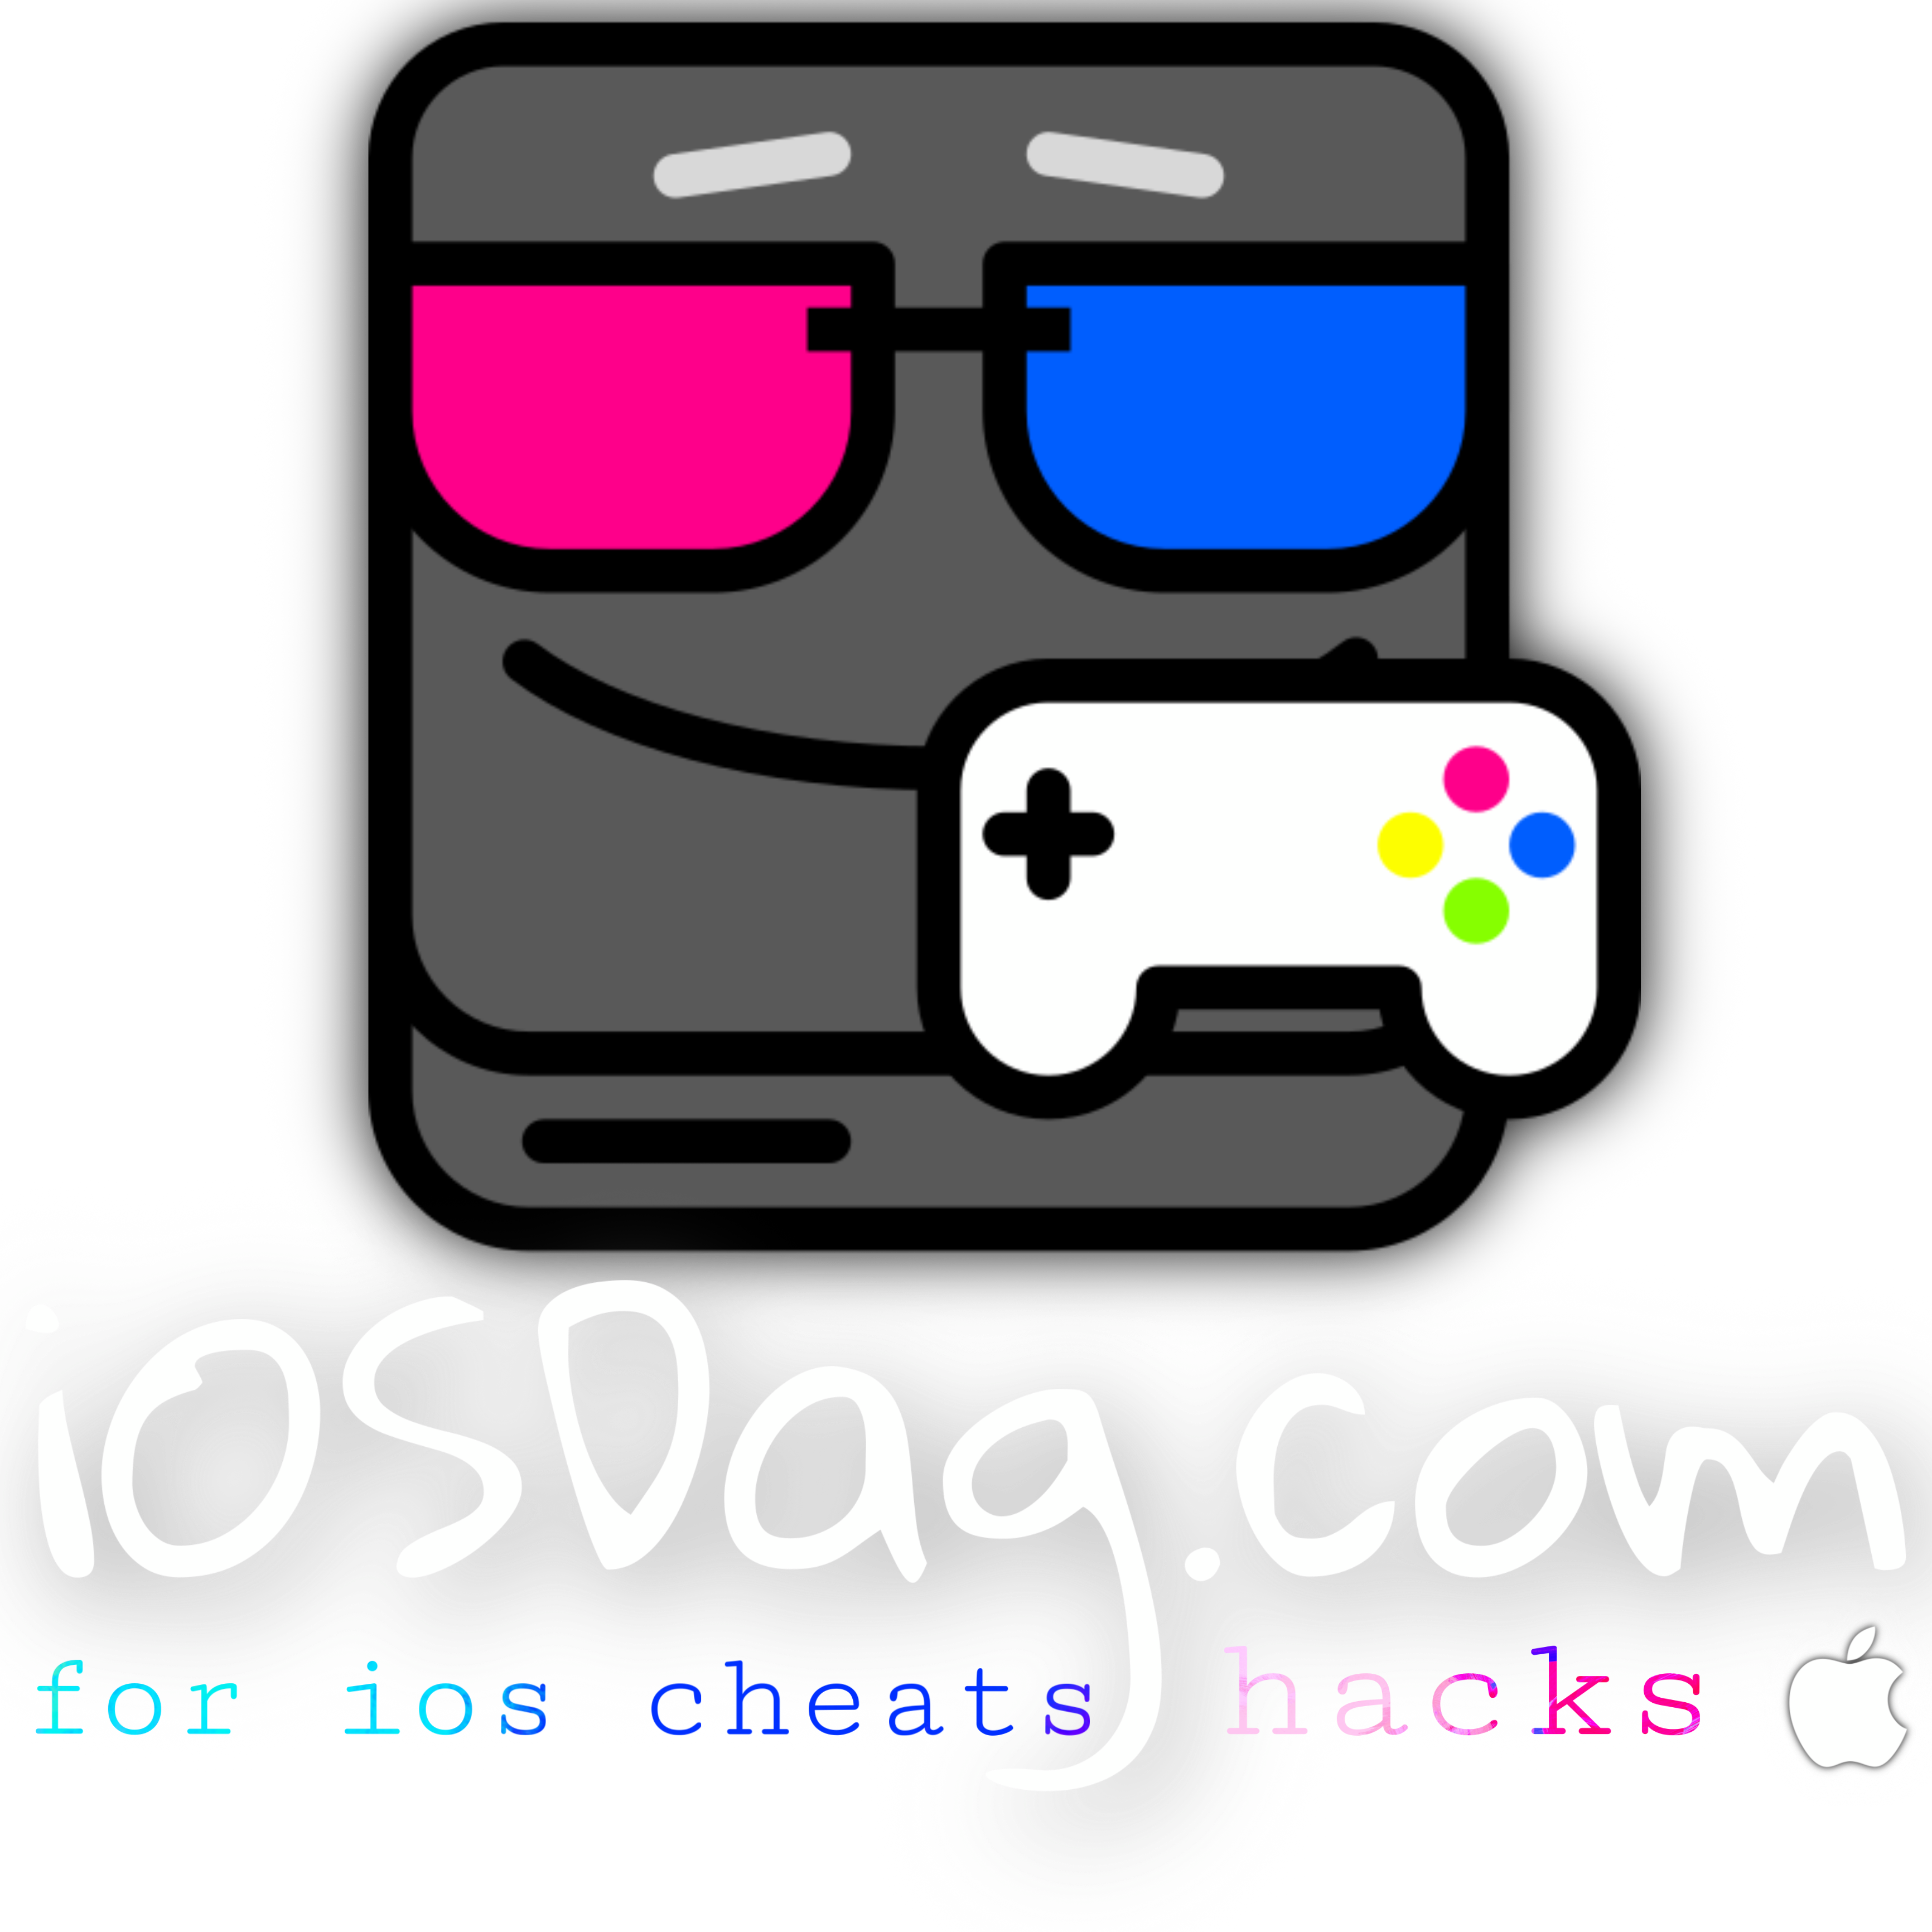 iOSDag! For iOS Hacks, Tools, Tutorials, Support